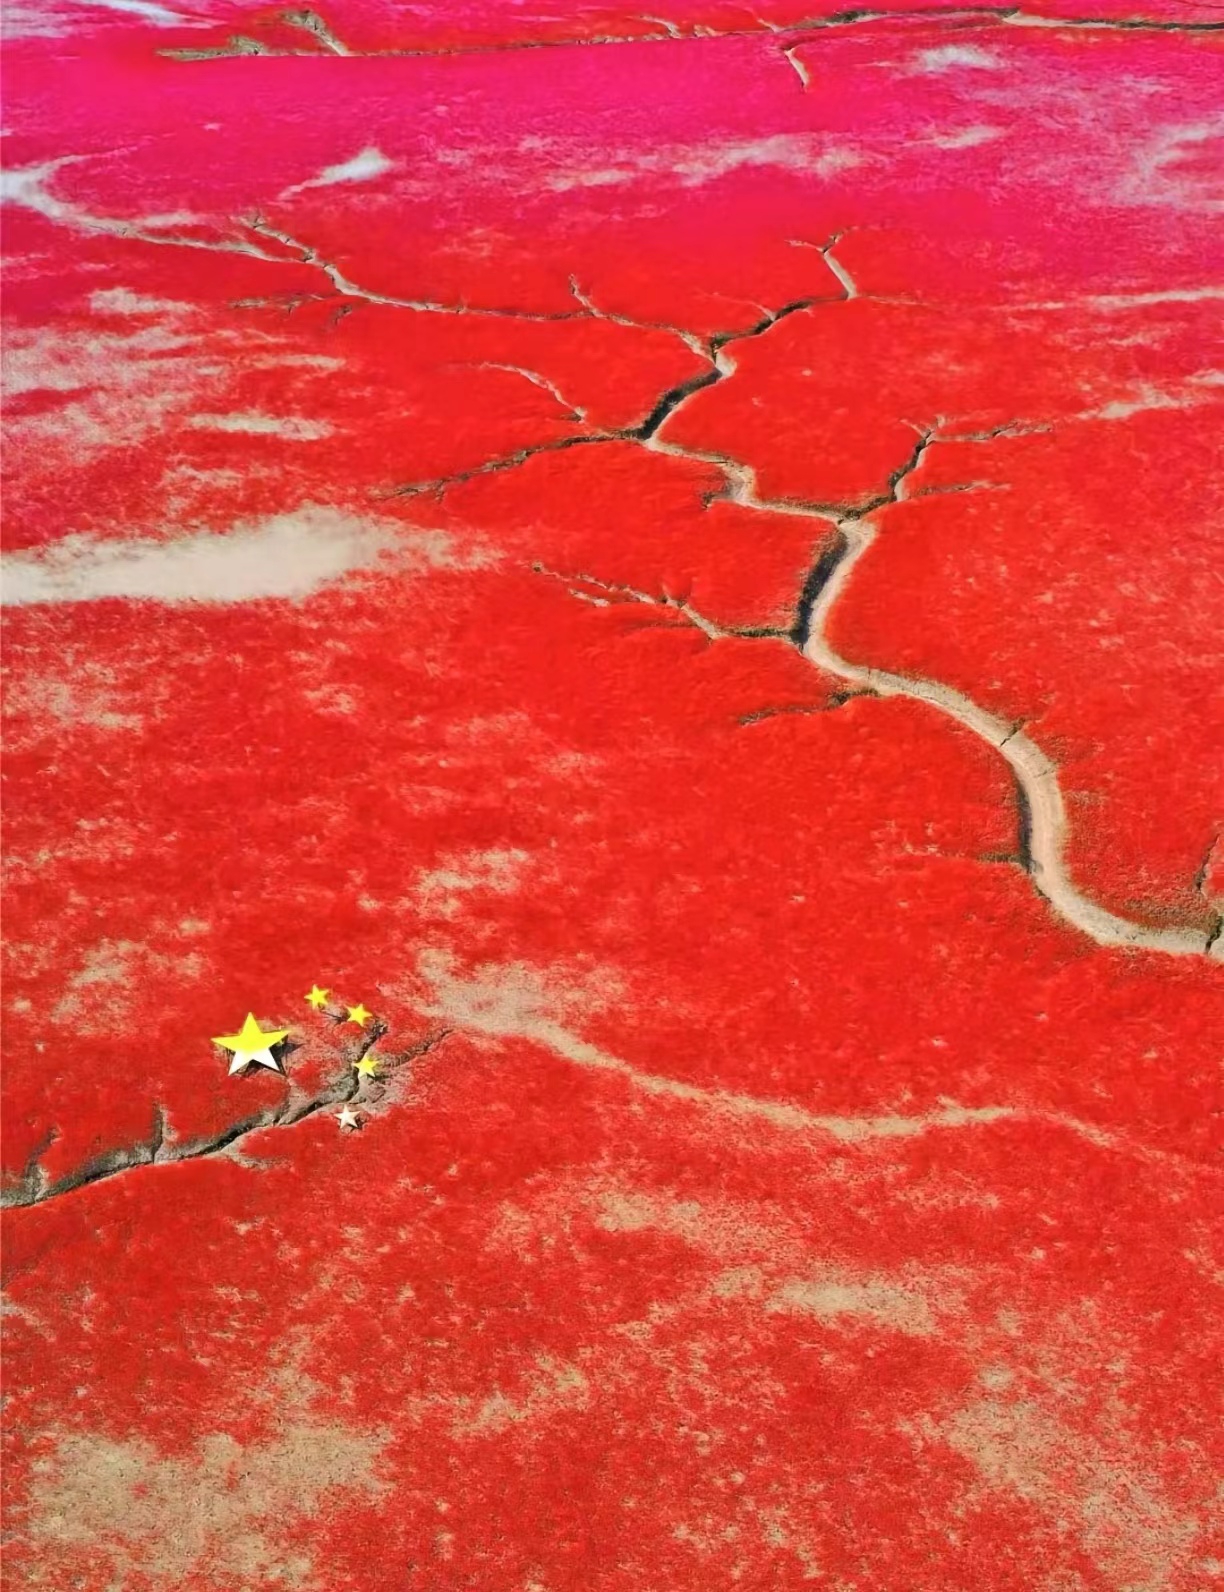 五一假期一定要去的景点攻略推荐——中国最美红海岸线湿地海滩